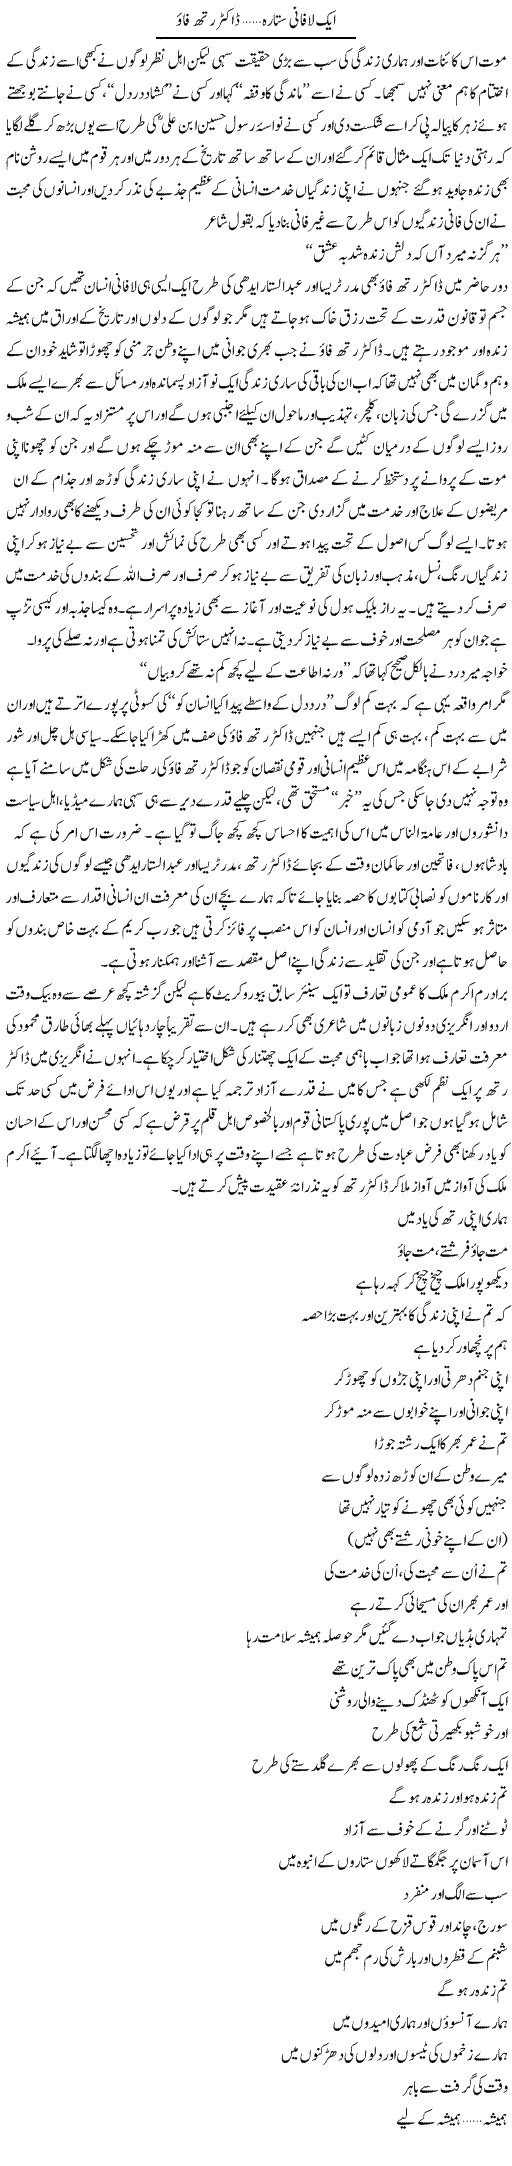 Aik Lafani Sitara, Dr. Ruth Pfau | Amjad Islam Amjad | Daily Urdu Columns